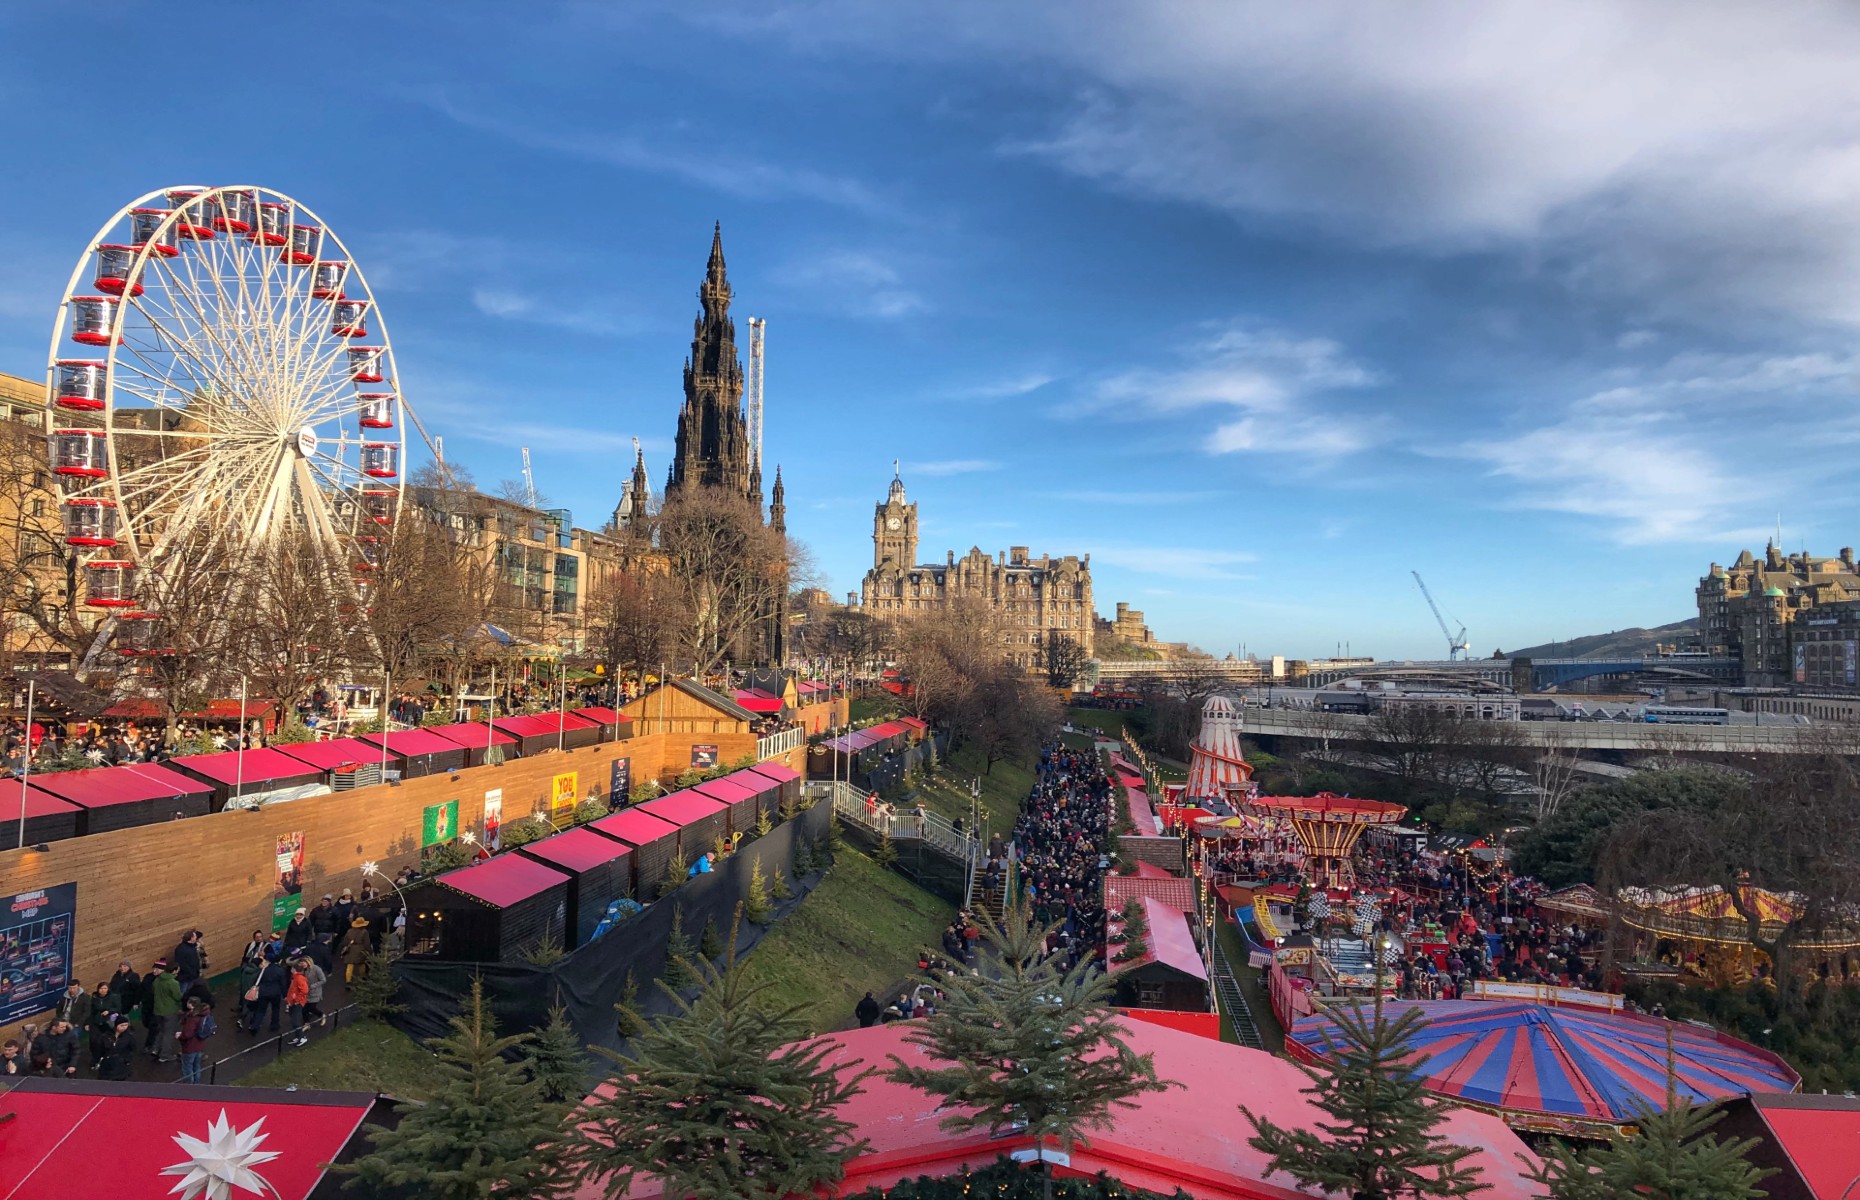 Edinburgh Christmas market (Image: Ashley Angela Miller/Shutterstock)